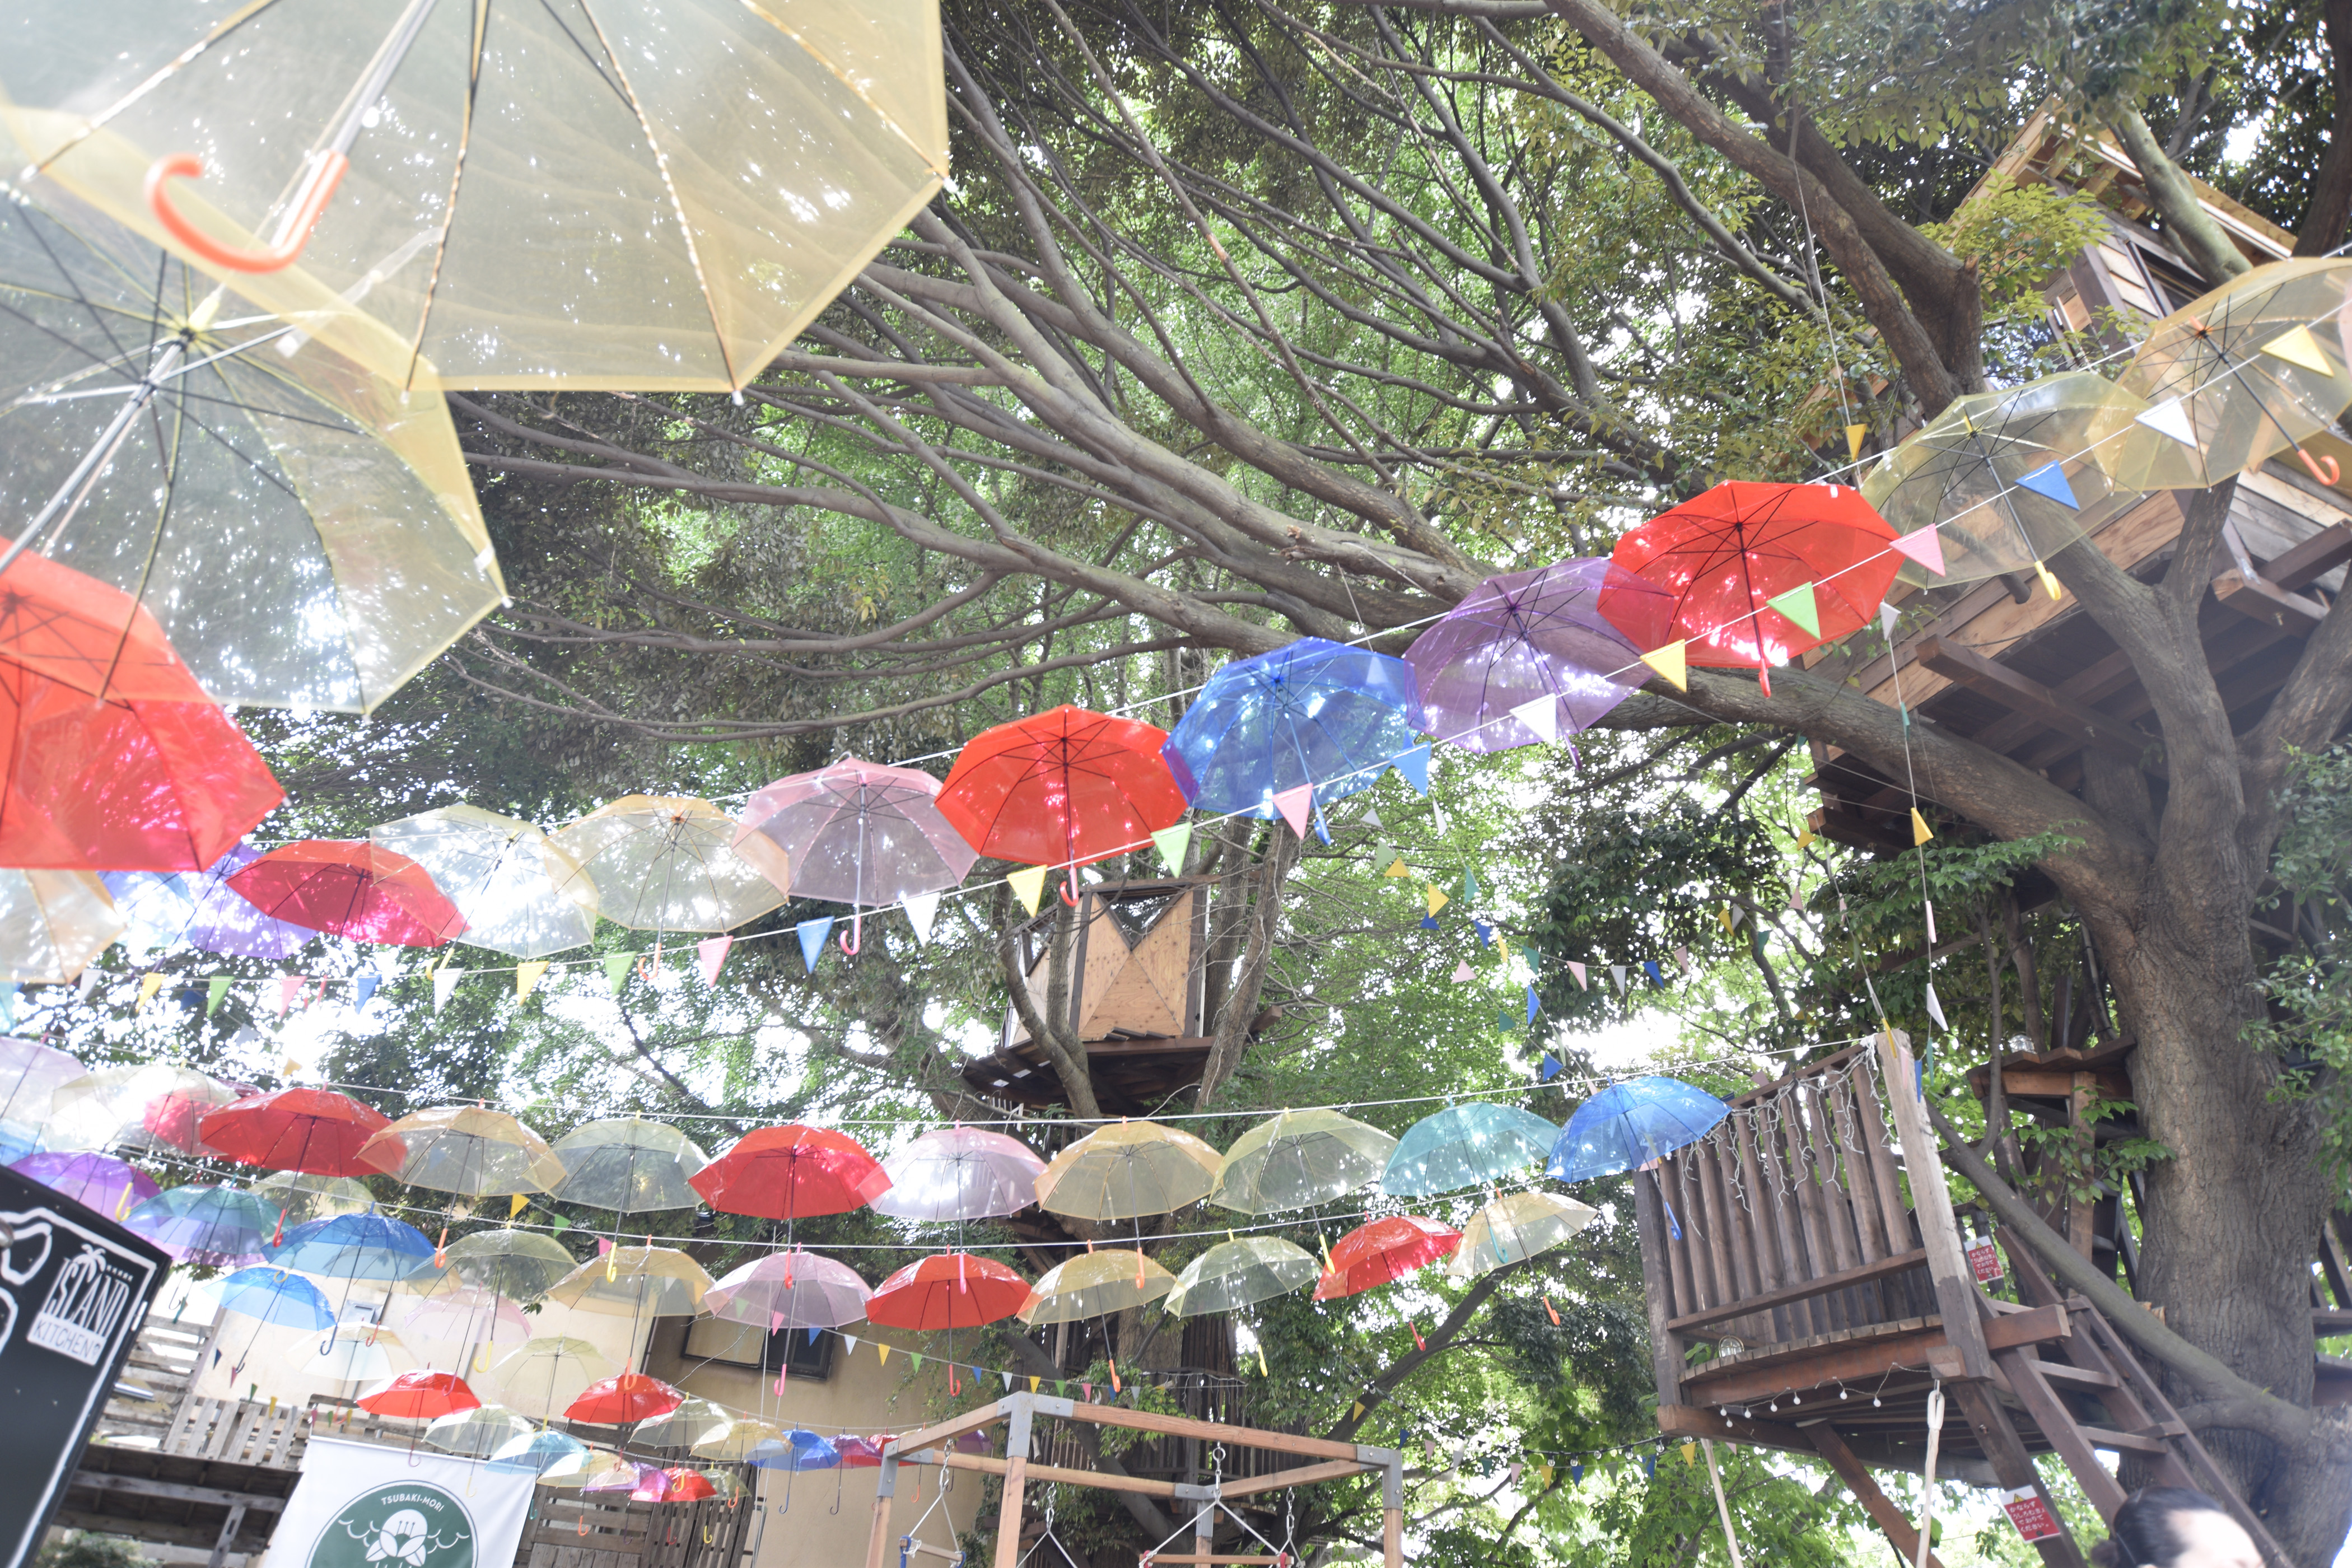 千葉市初 ツリーハウスの森カフェ 椿森コムナ を0本の傘が埋め尽くす 期間限定で色が変化 株式会社拓匠開発のプレスリリース